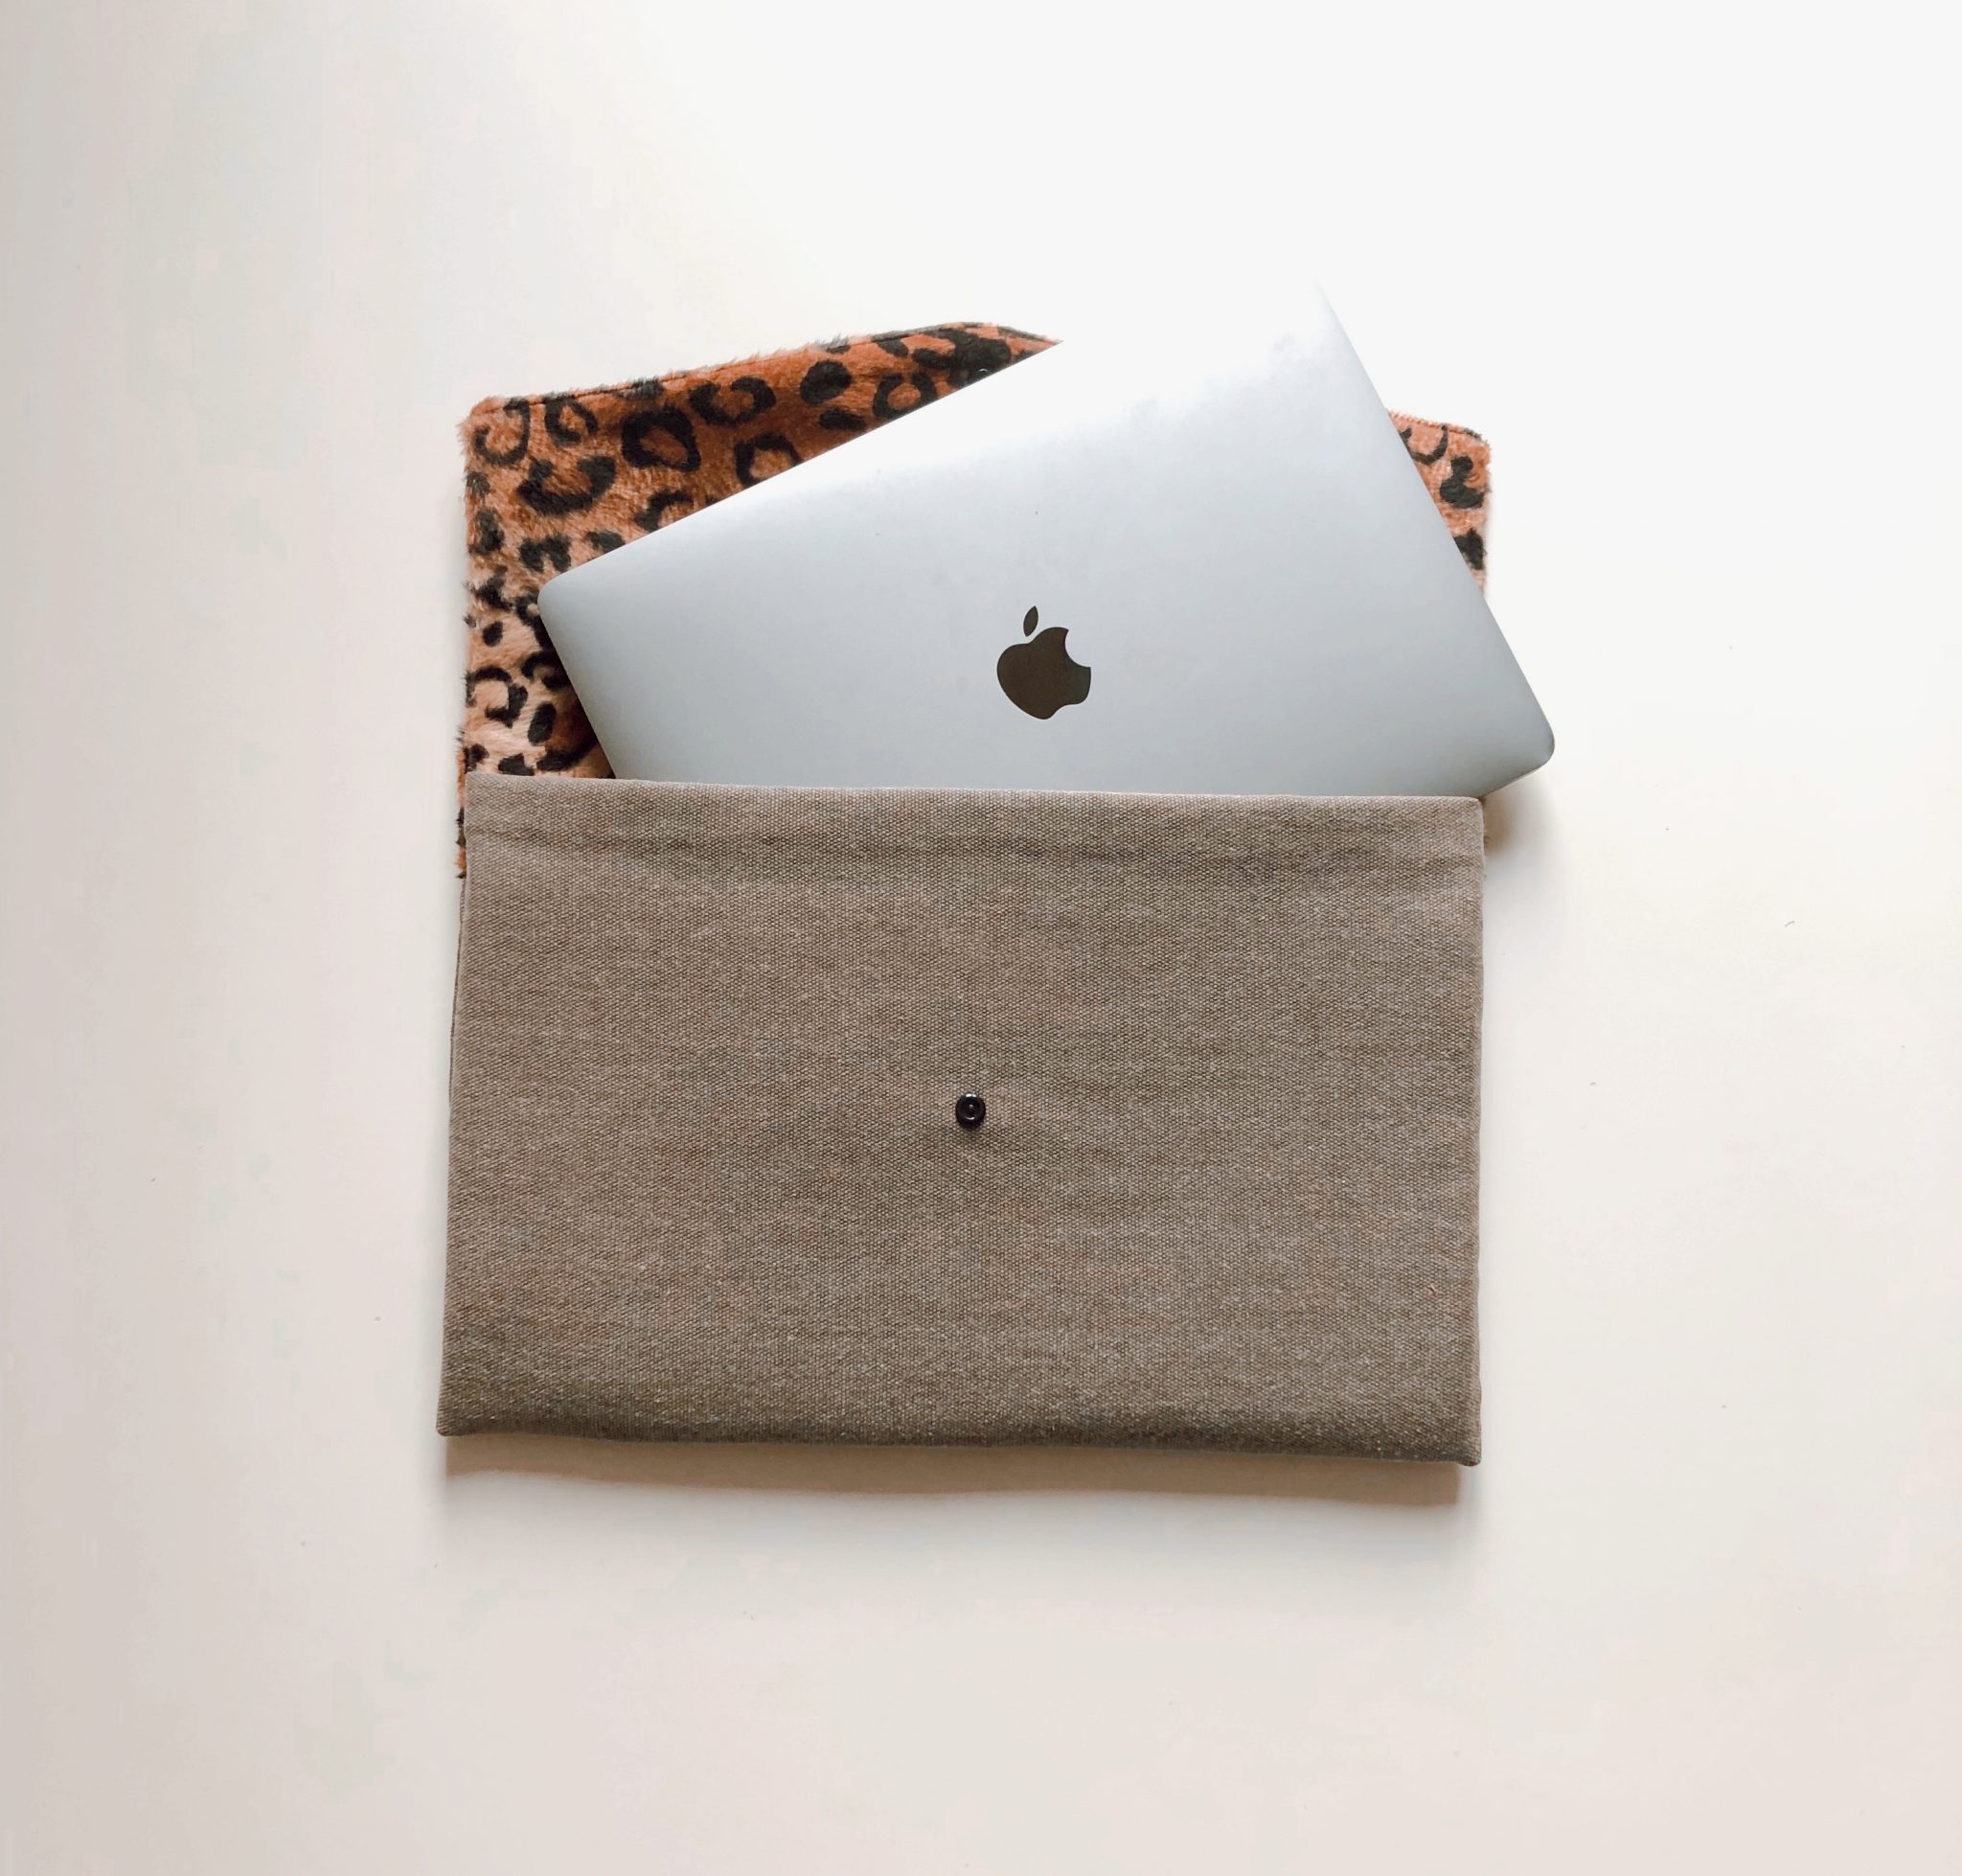 Pochette ordinateur MacBook ou PC Bleu Souris marron beige et fourrure léopard. Présentation ouvert avec Mac book apple